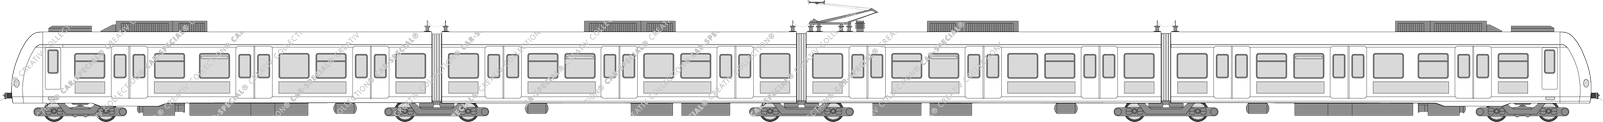 Schienenpersonenverkehr S-Bahn, ET 423, Duewag/Siemens